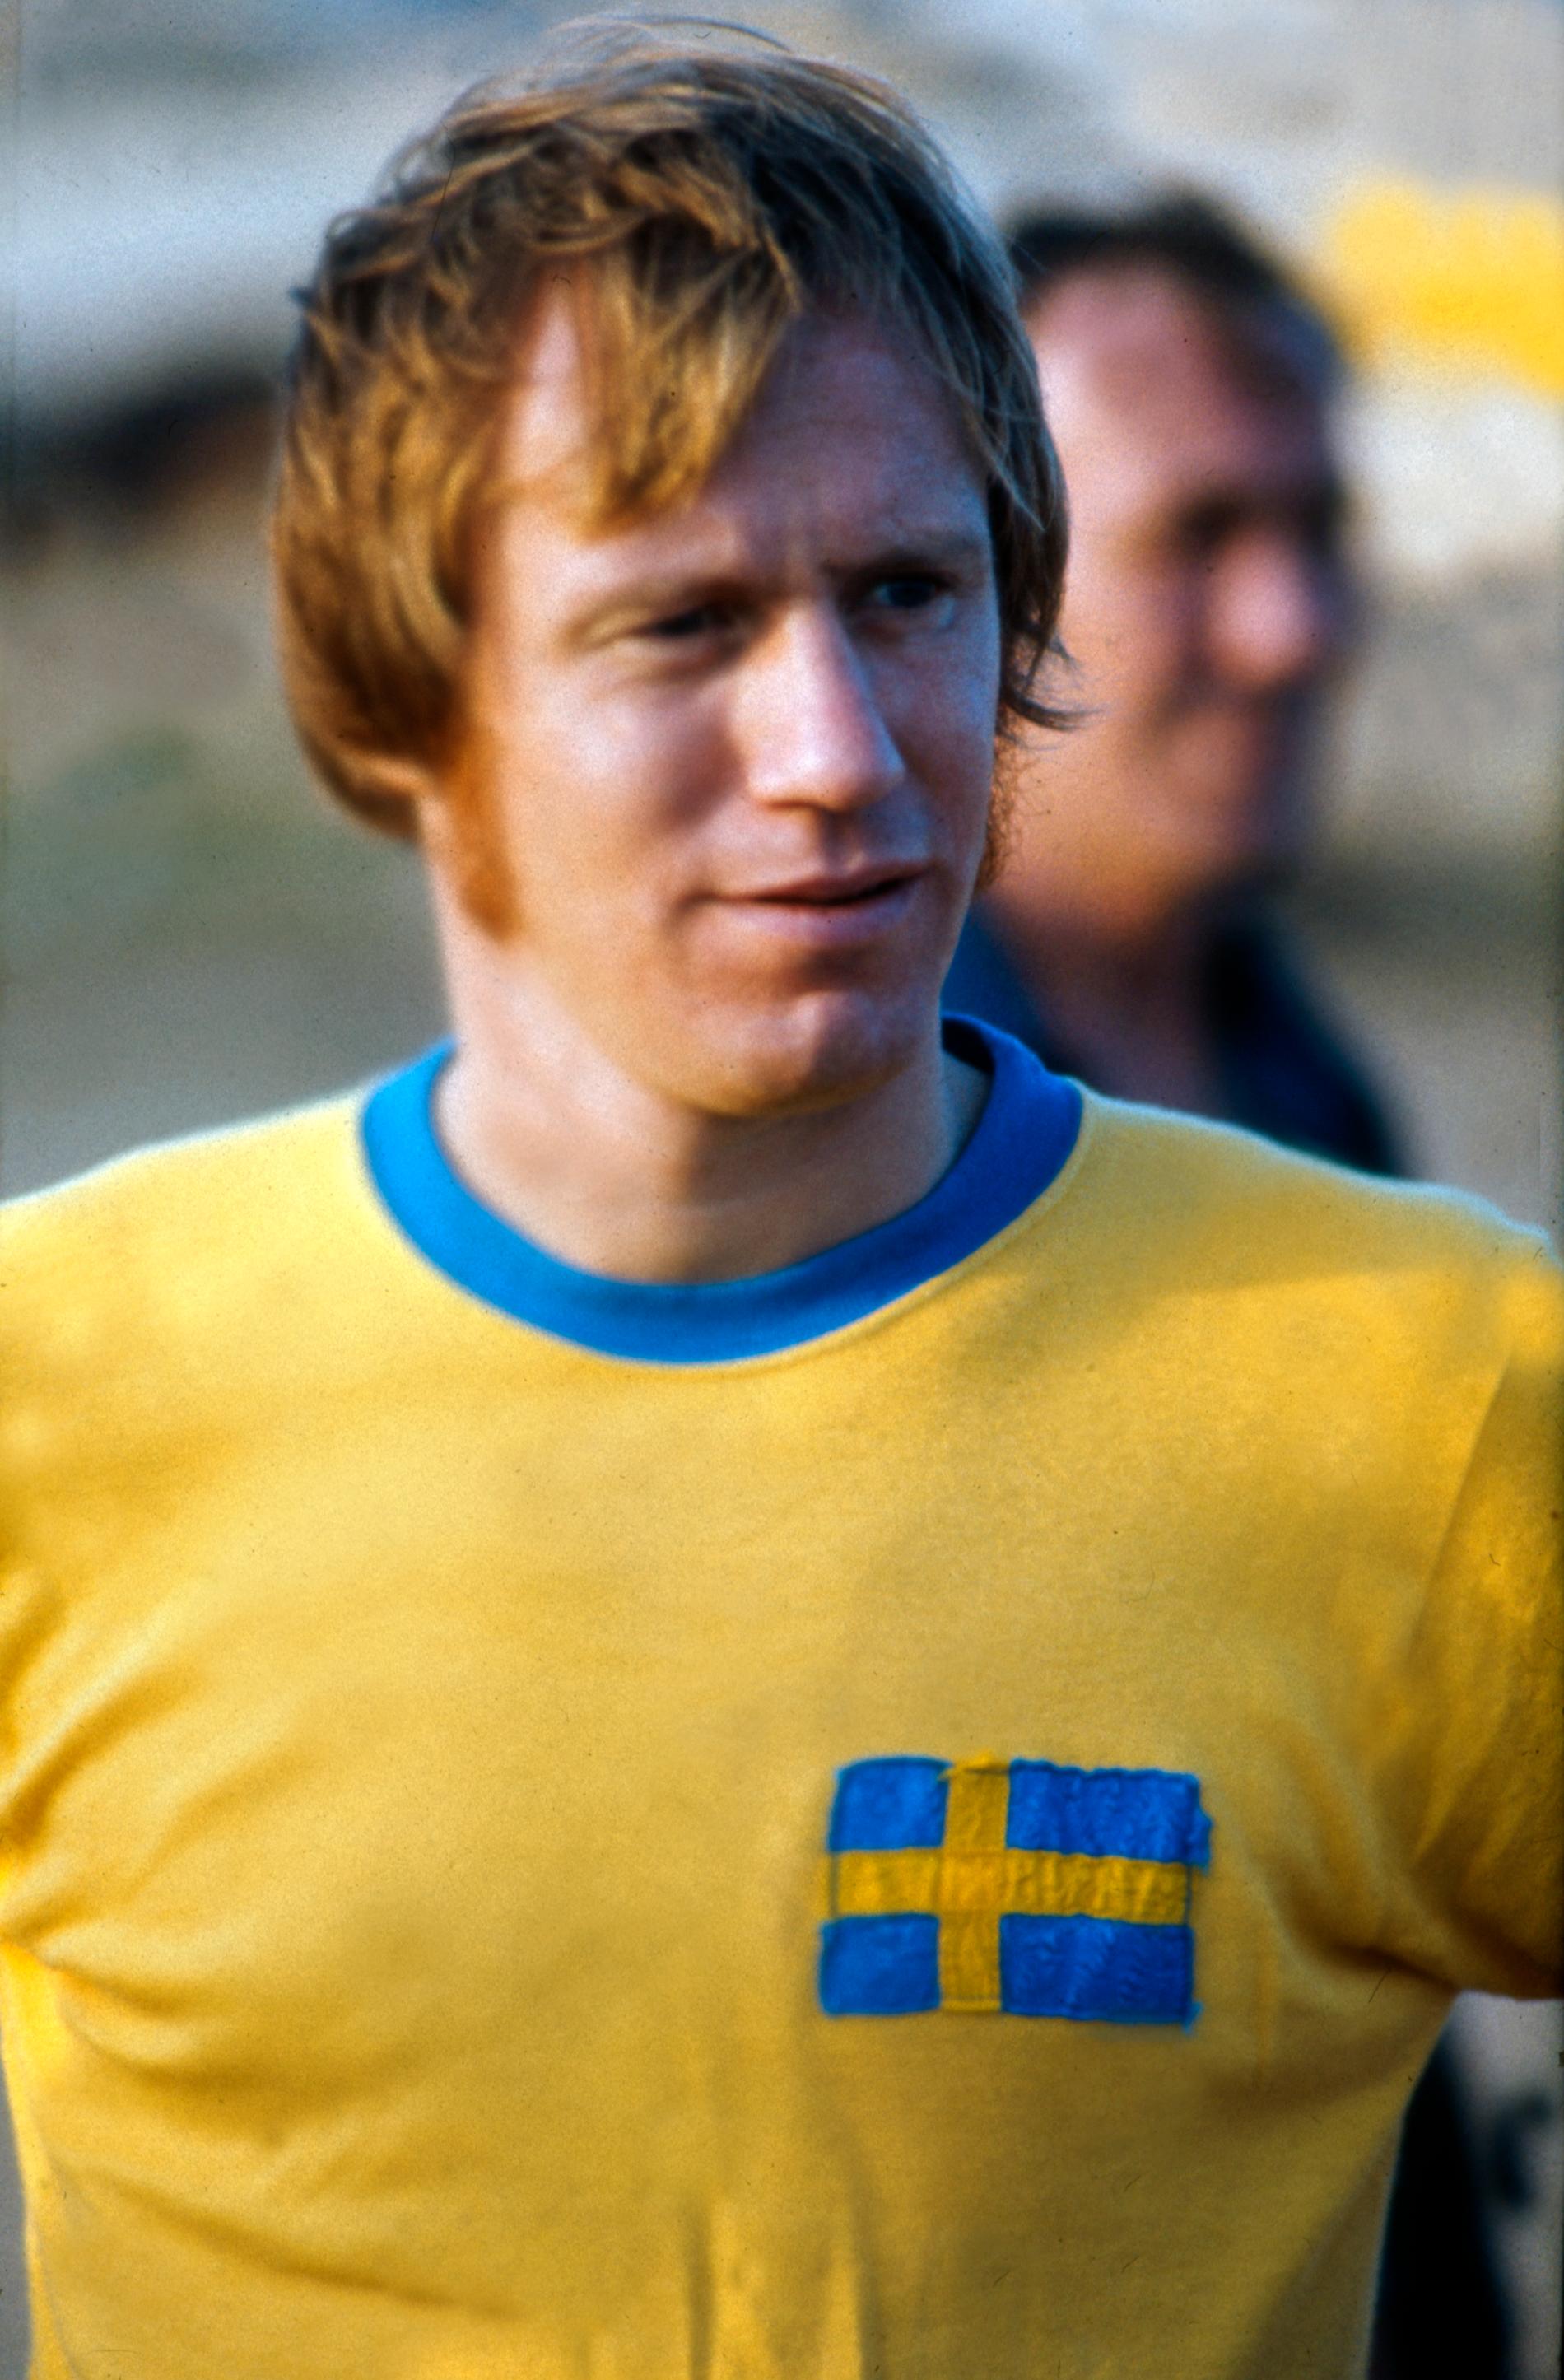 Kolla - flagga! Snyggare än trist sköld. 1973.